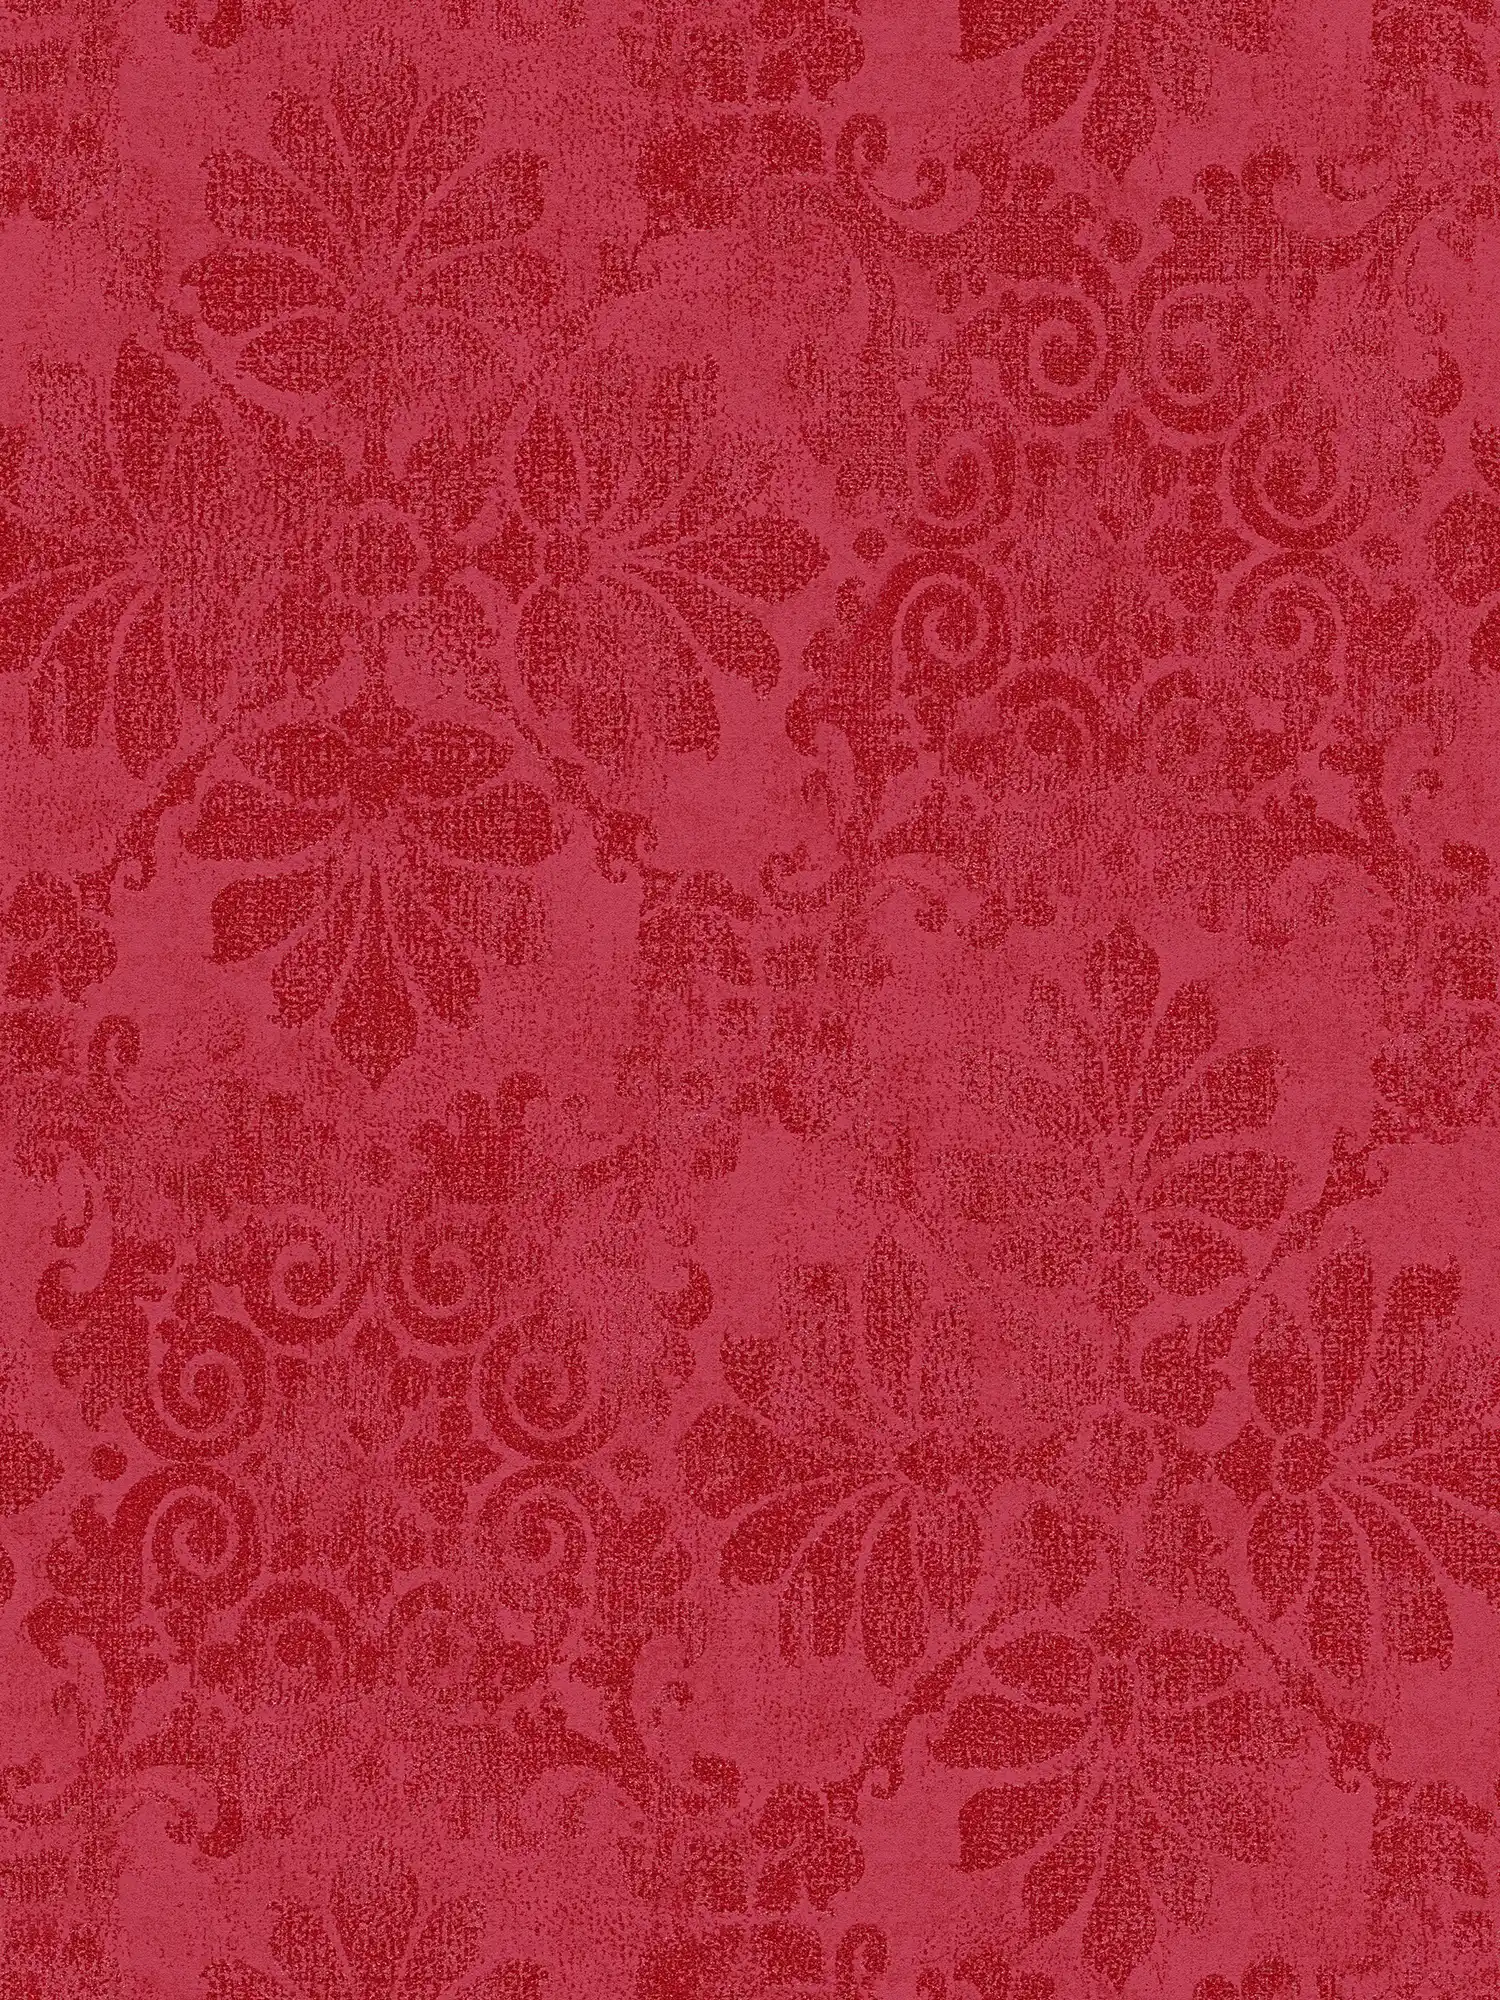         Papier peint à motifs avec ornements floraux dans le style vintage - rouge, métallique
    